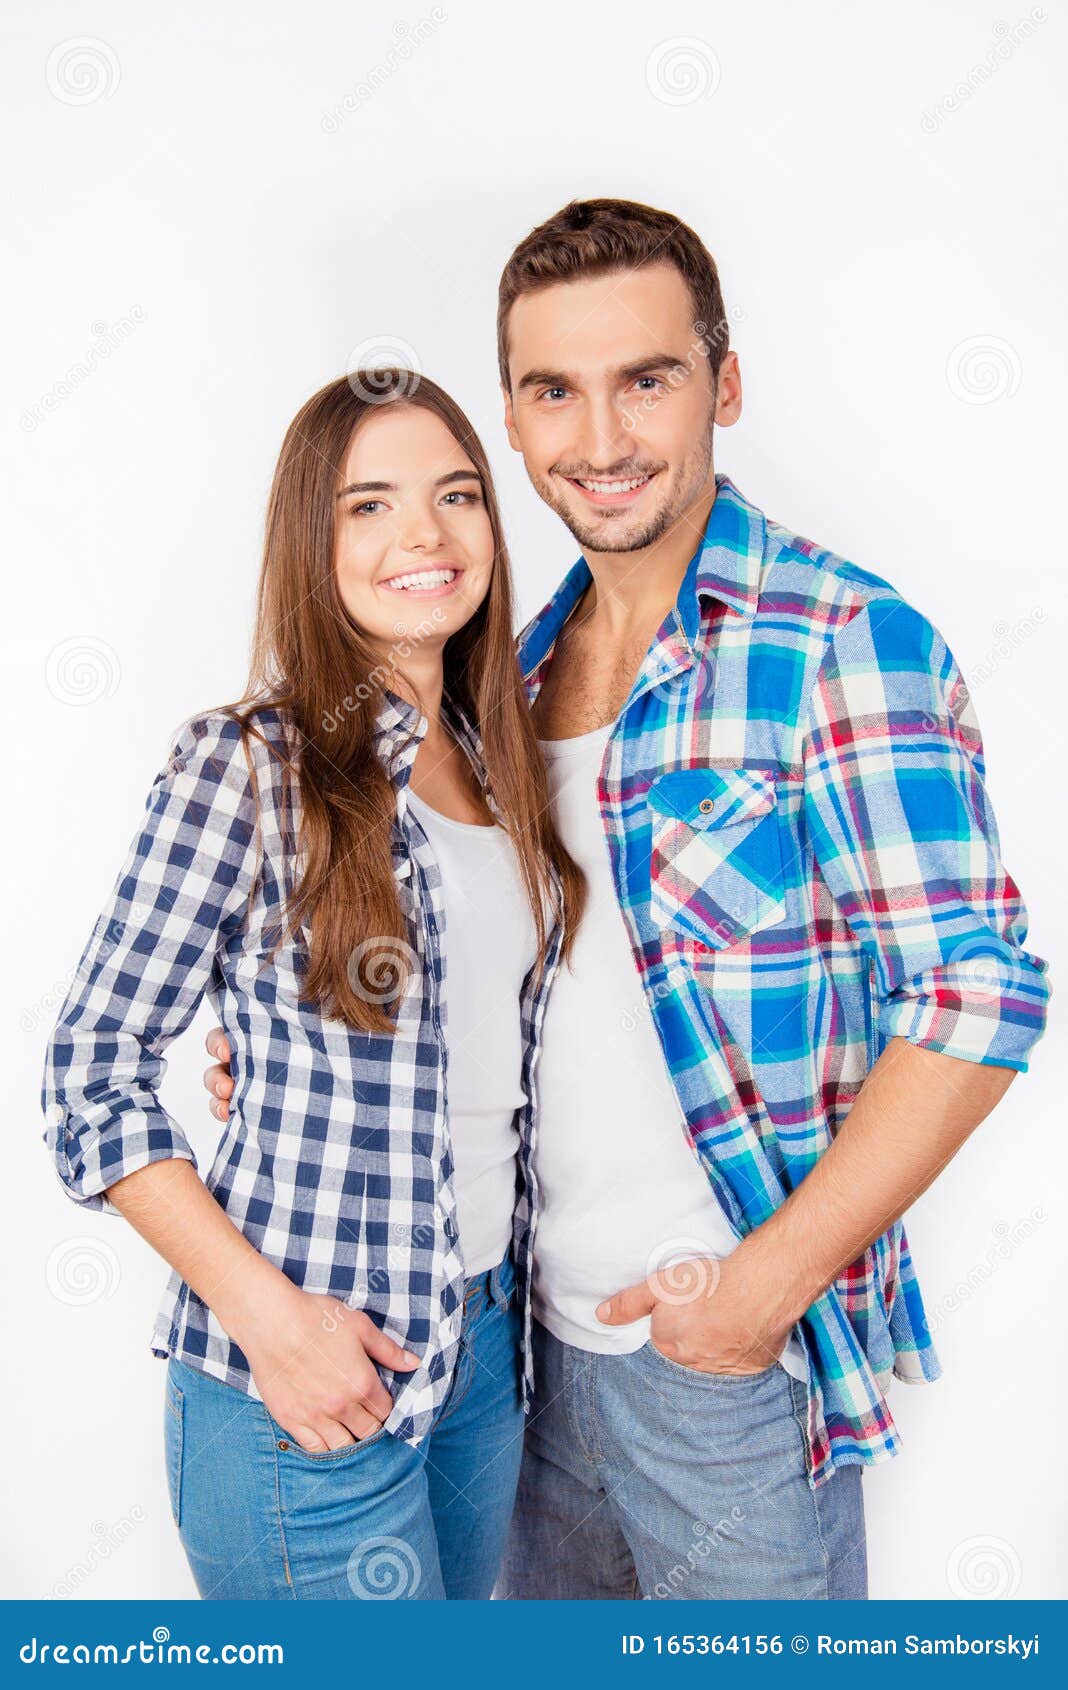 Обнимать рубашку. Фотосессия пары в клетчатых рубашках. Мужчина и две девушки в клетчатых рубашках. Молодая пара молодой человек девушка в белых джинсах.